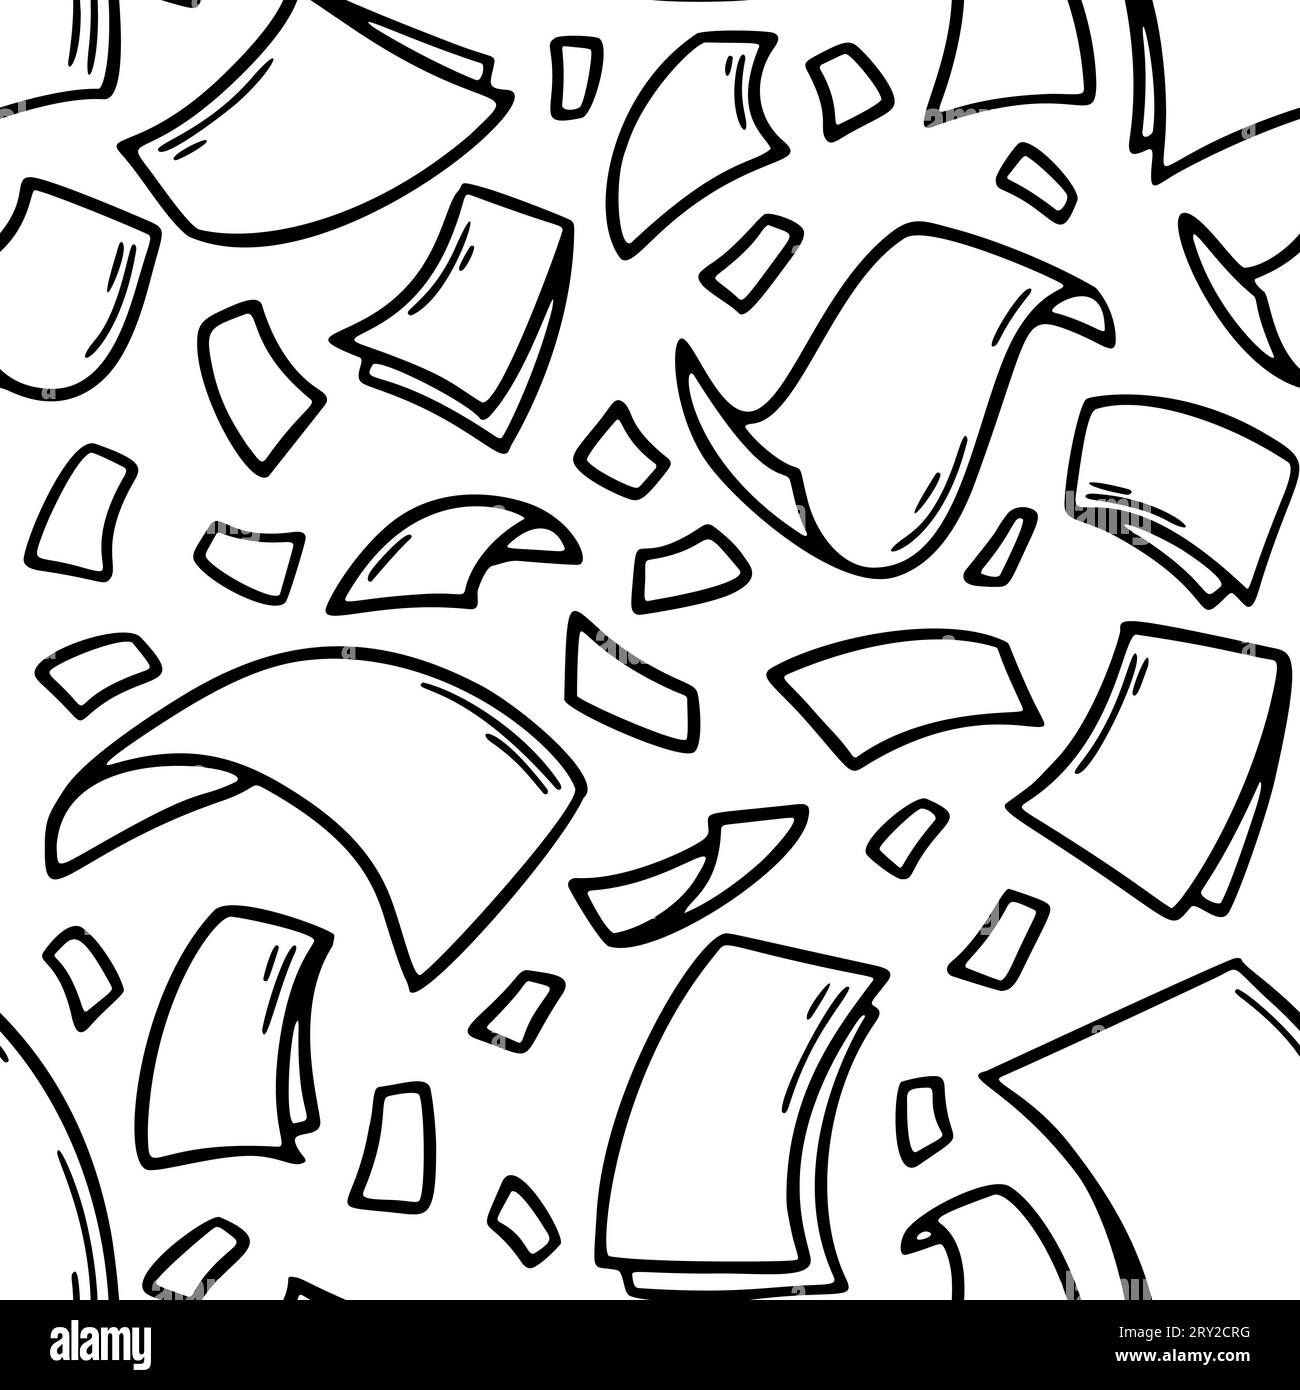 Hojas de papel volador sin patrón en estilo doodle. Páginas de documentos en blanco dibujadas a mano. Caída de archivos de documentos. Ilustración vectorial de negocios de oficina Ilustración del Vector